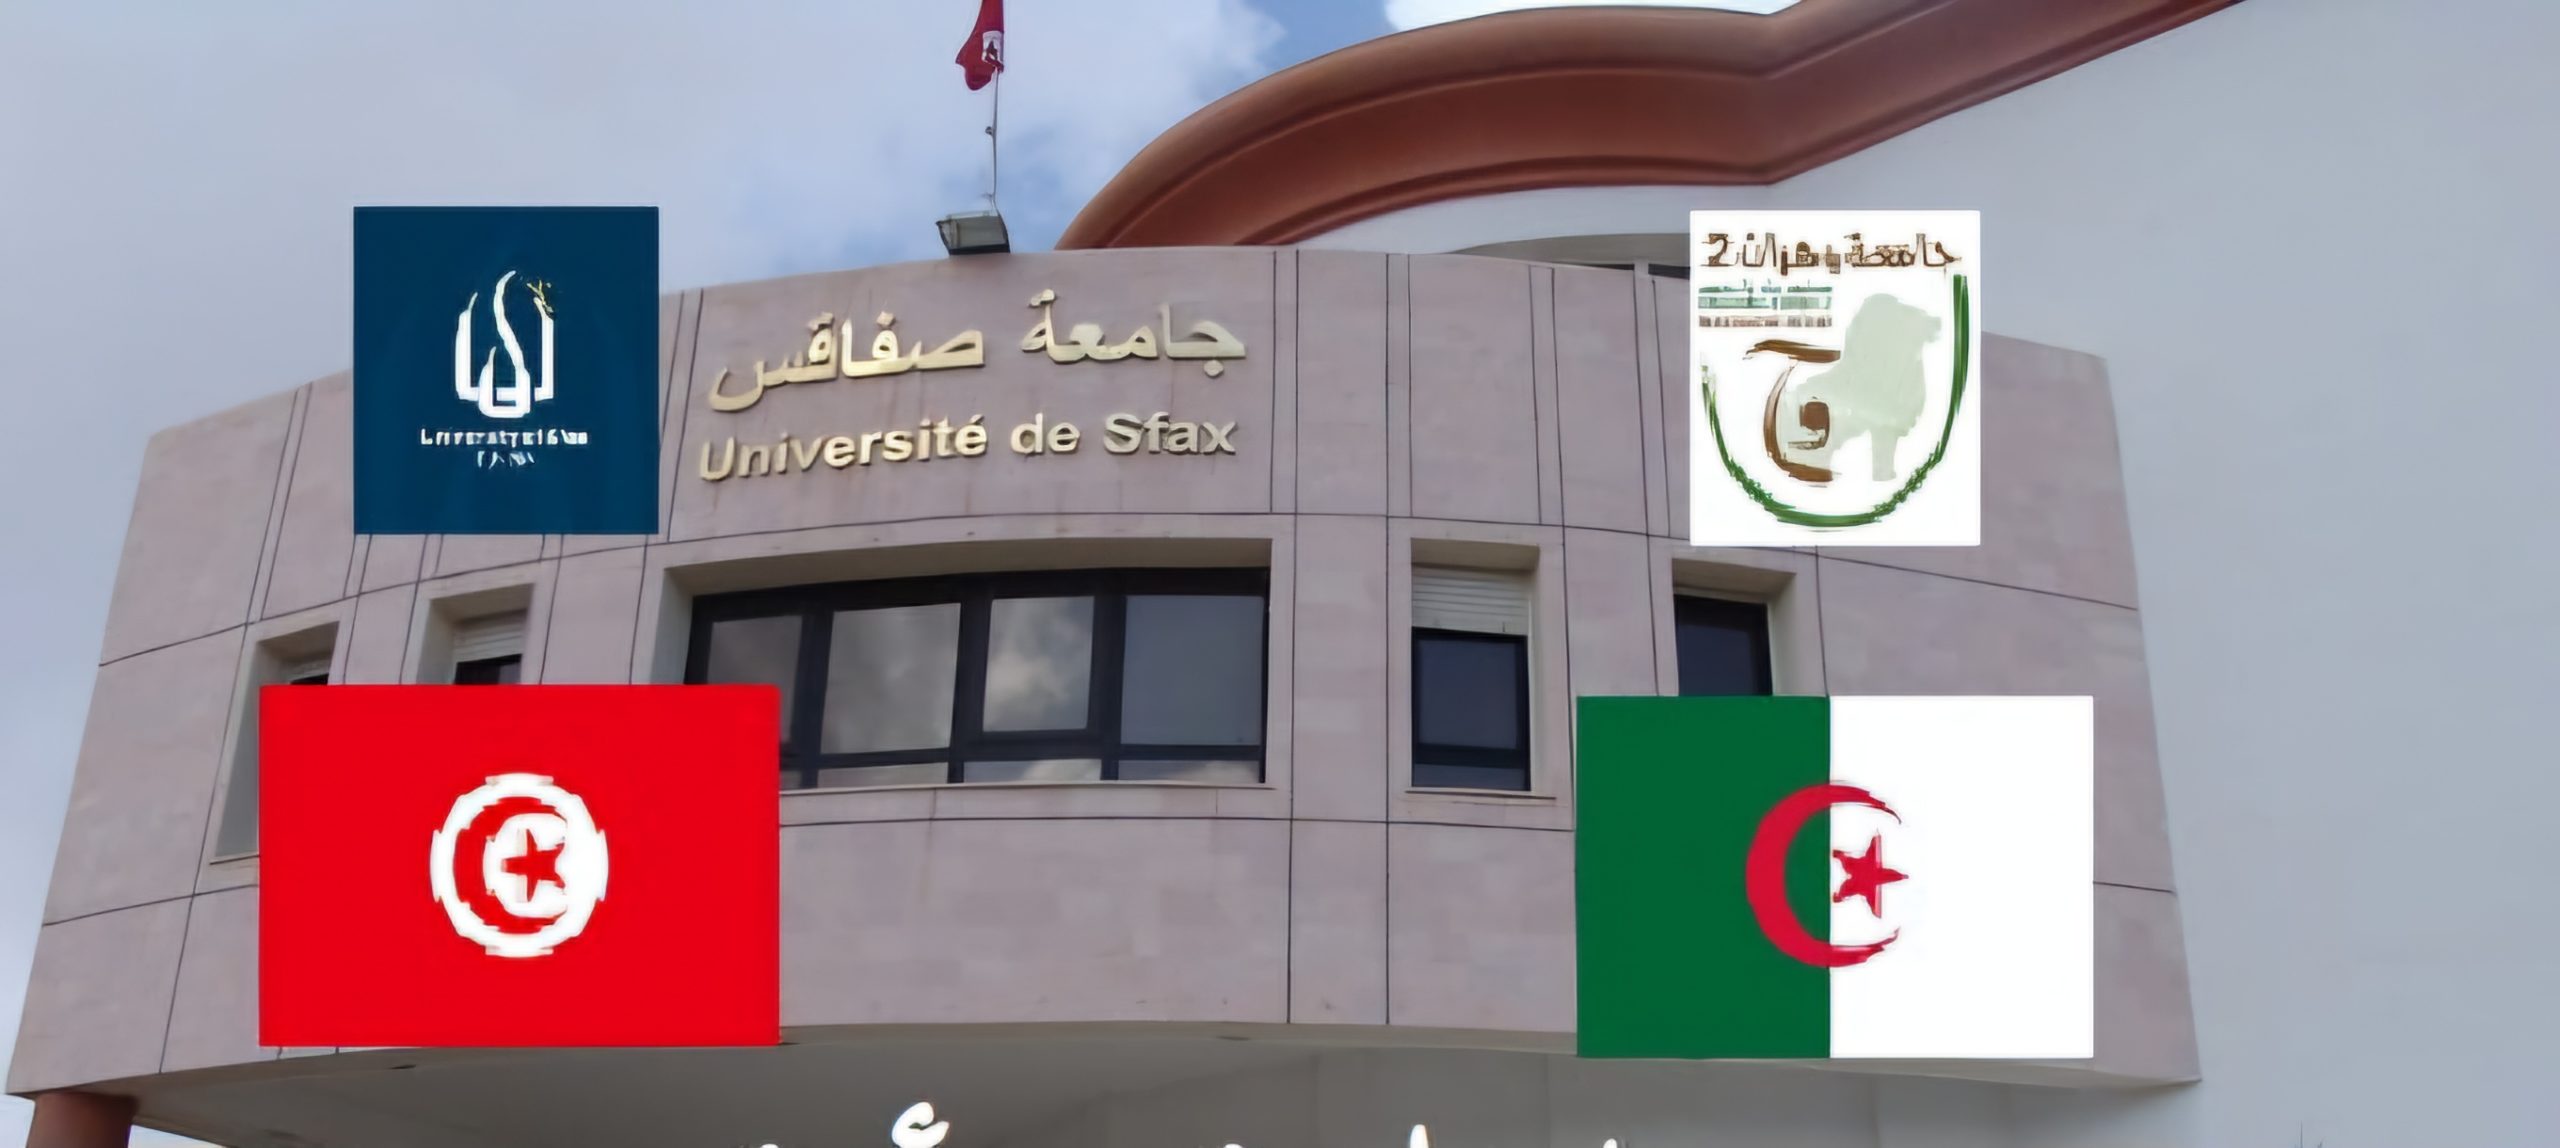 Les Universités d'Oran 2 et Sfax consolident leurs liens!